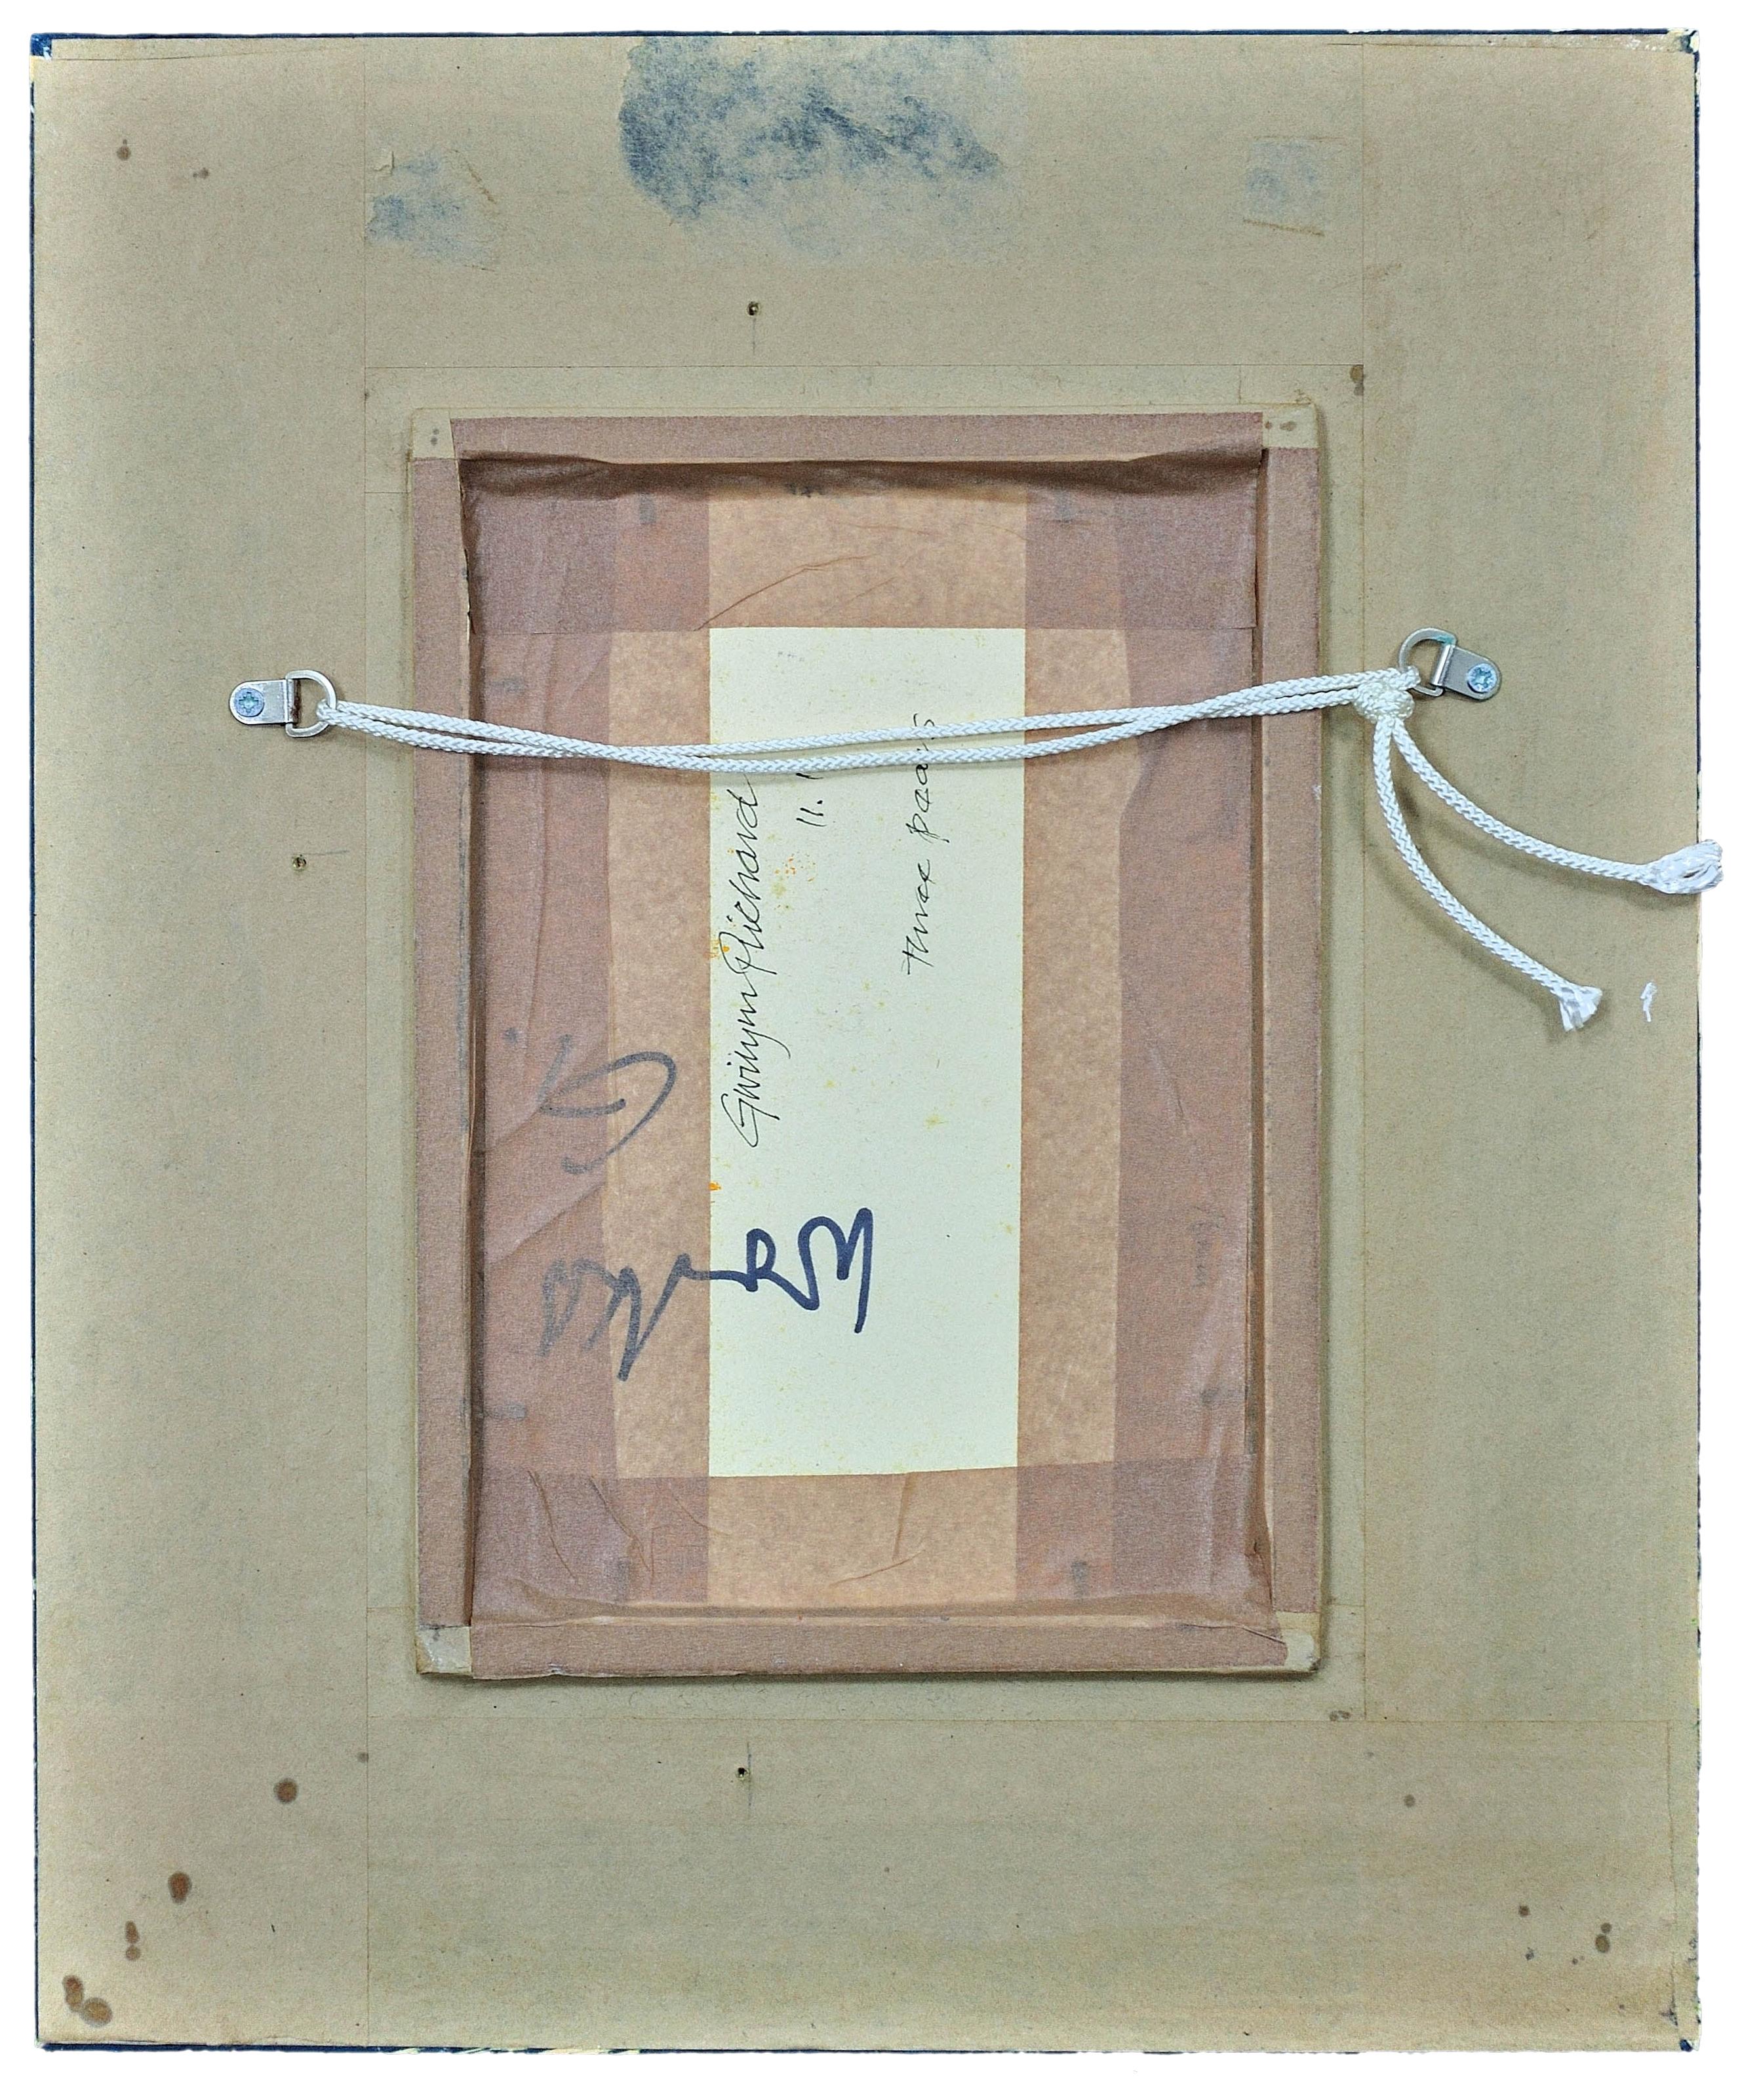 Gwilym Prichard.
Waliser ( geb.1931 - gest.2015 ).
Drei Birnen, 2011.
Öl auf Leinwand Karton.
Signiert mit einem Monogramm unten links.
Bildgröße 9 Zoll x 6,1 Zoll (23cm x 15,5cm).
Rahmengröße 17,7 Zoll x 14,6 Zoll (45cm x 37cm).

Dieses